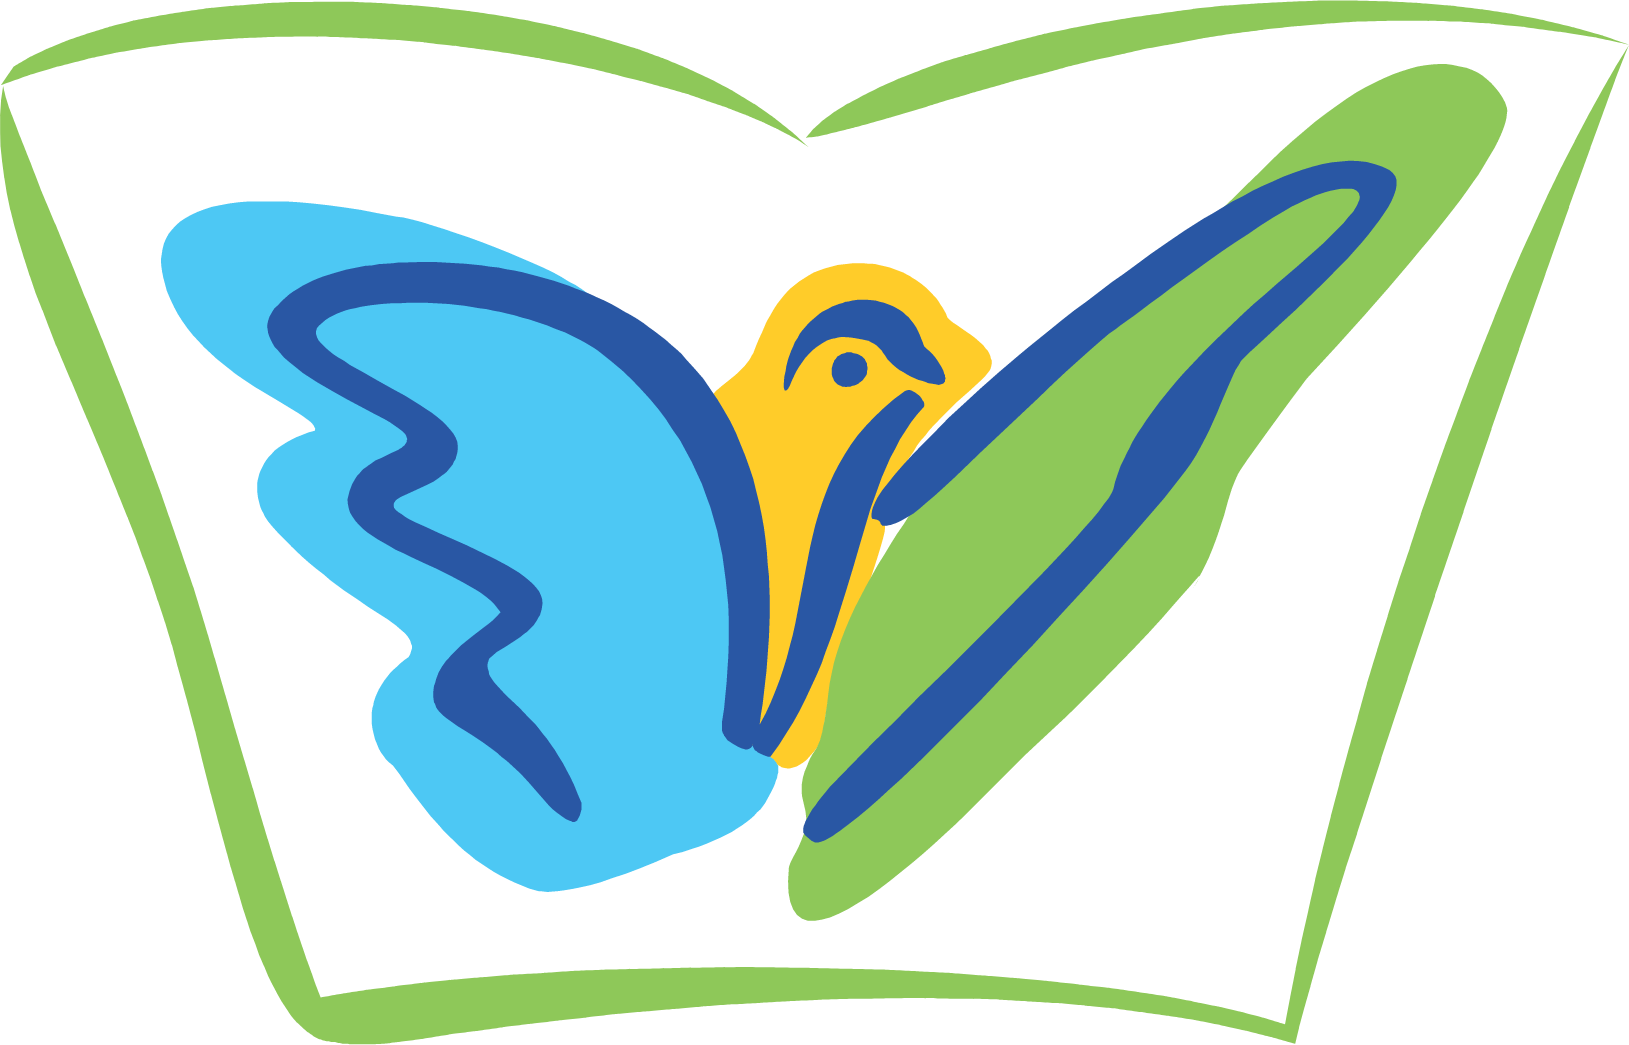 Jubilant Life Sciences logo (PNG transparent)